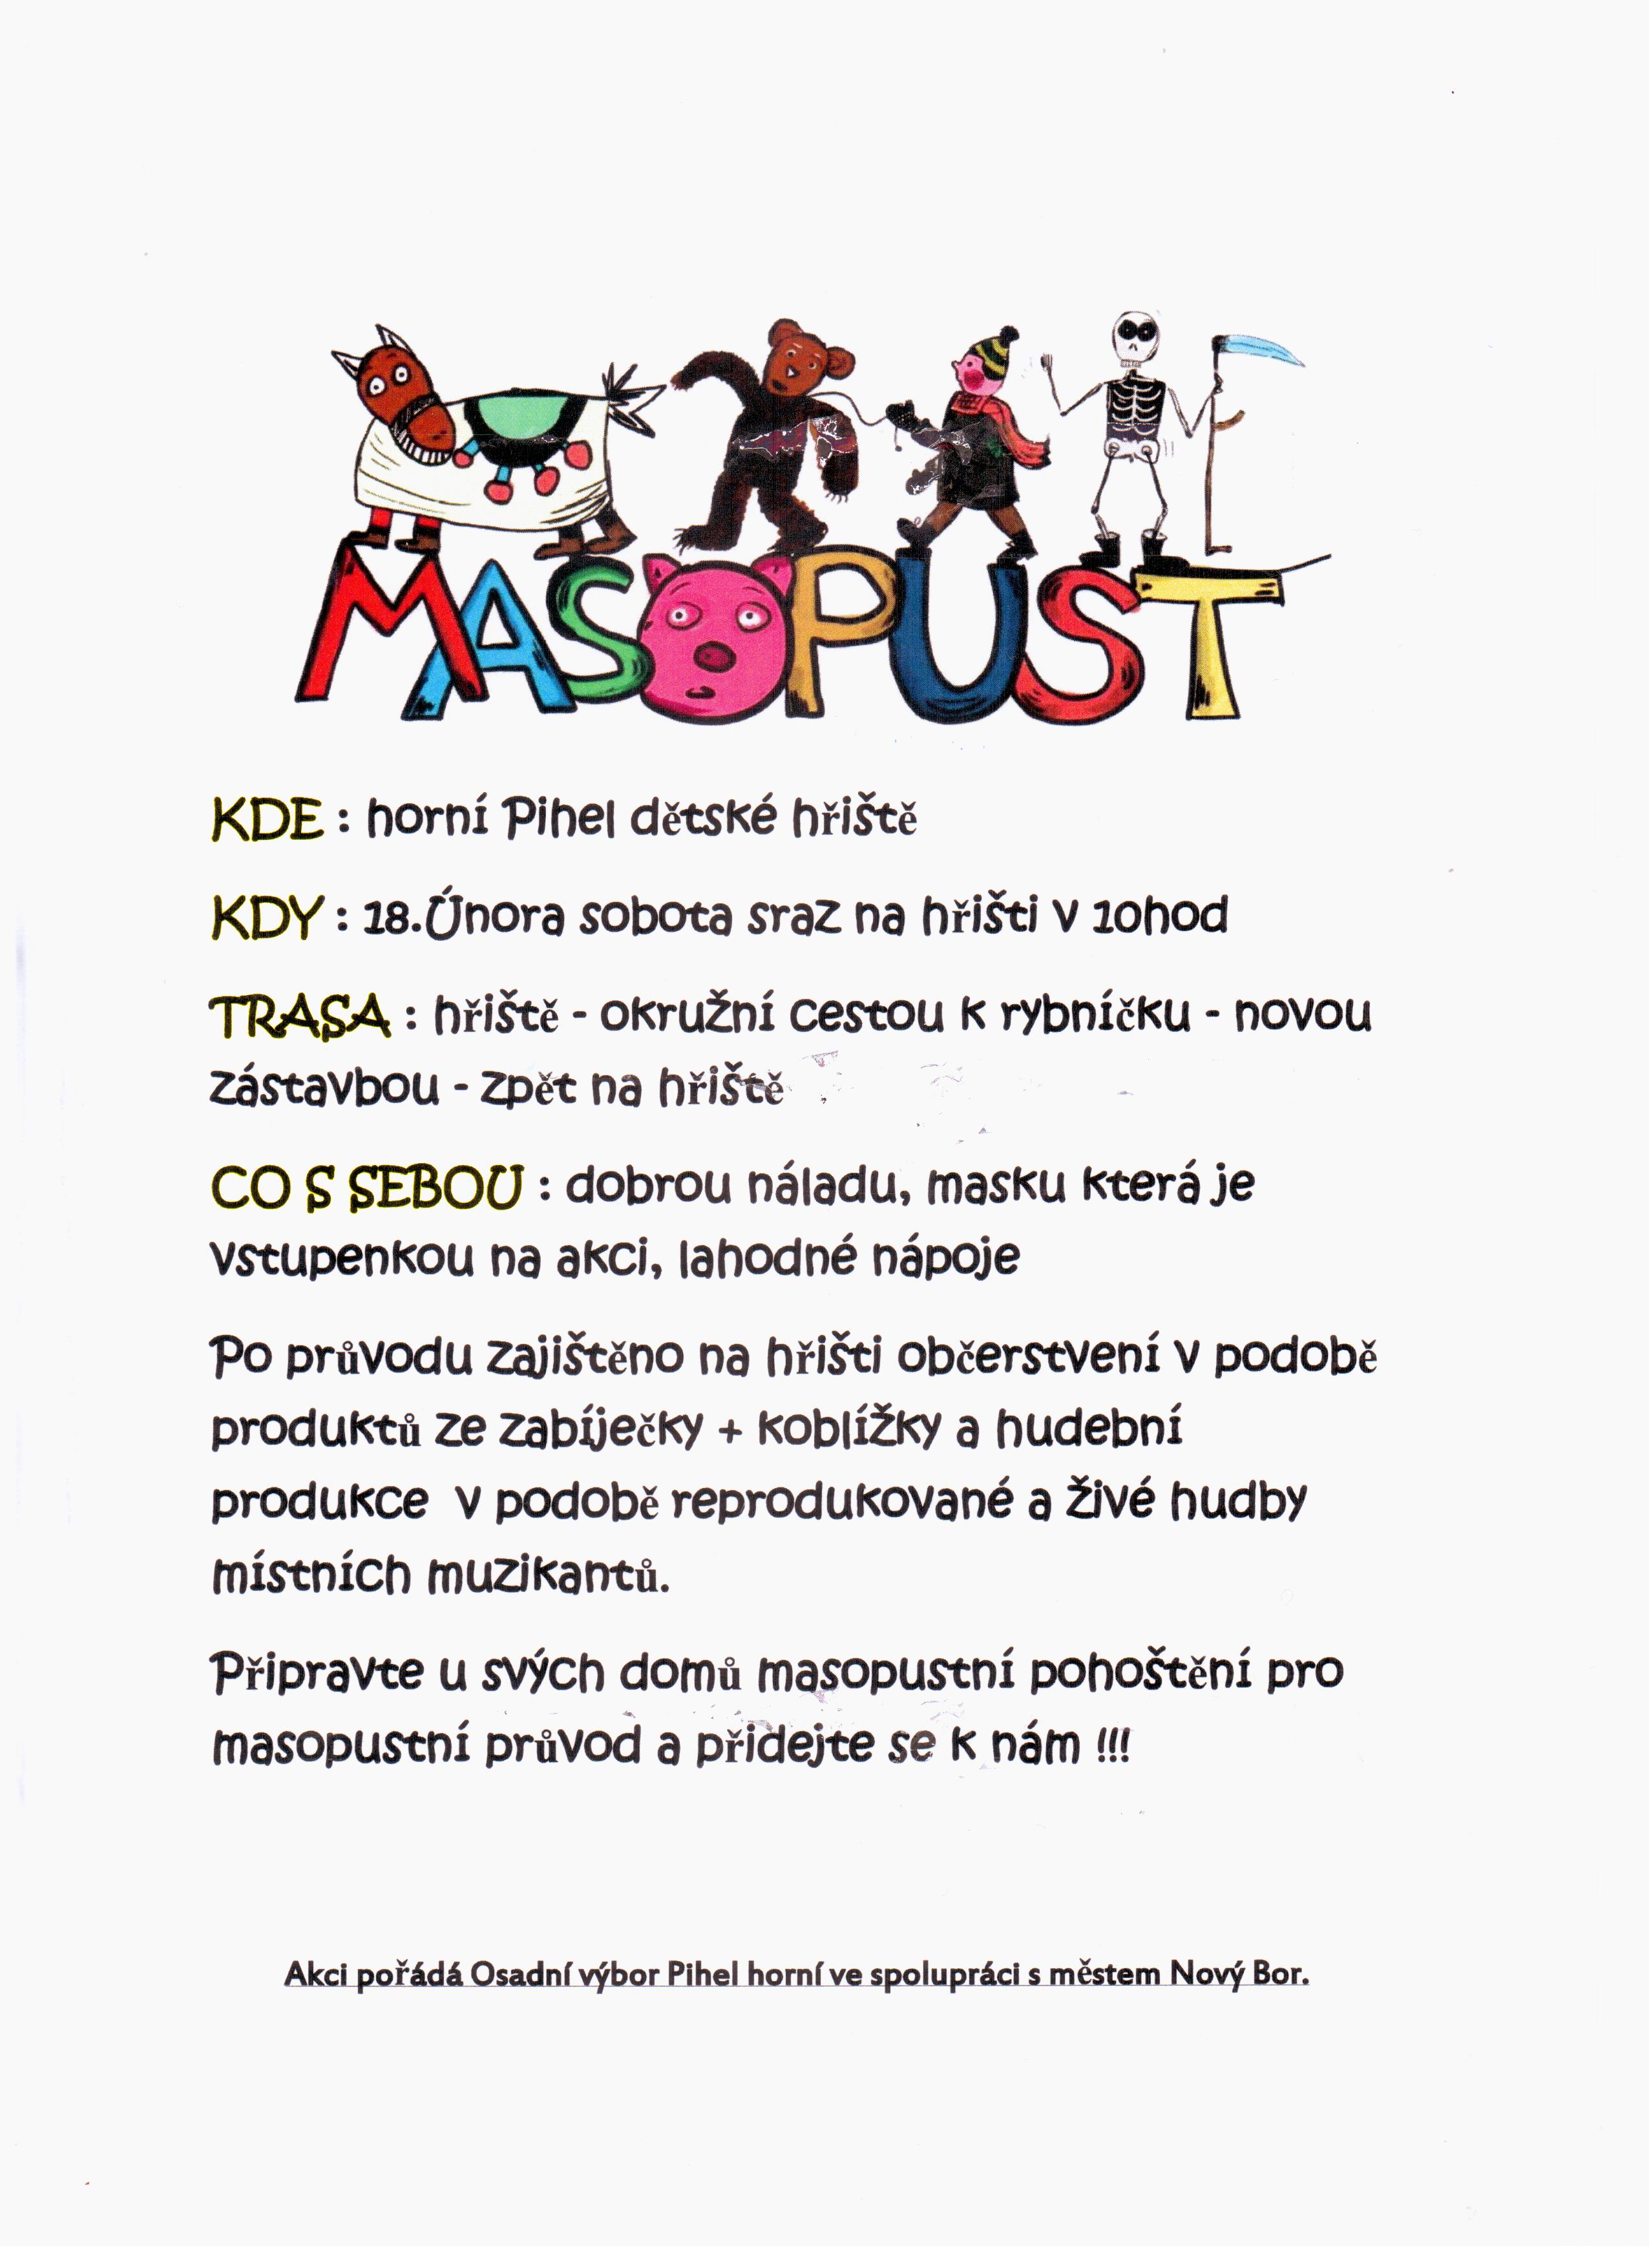 Masopust 2017 001